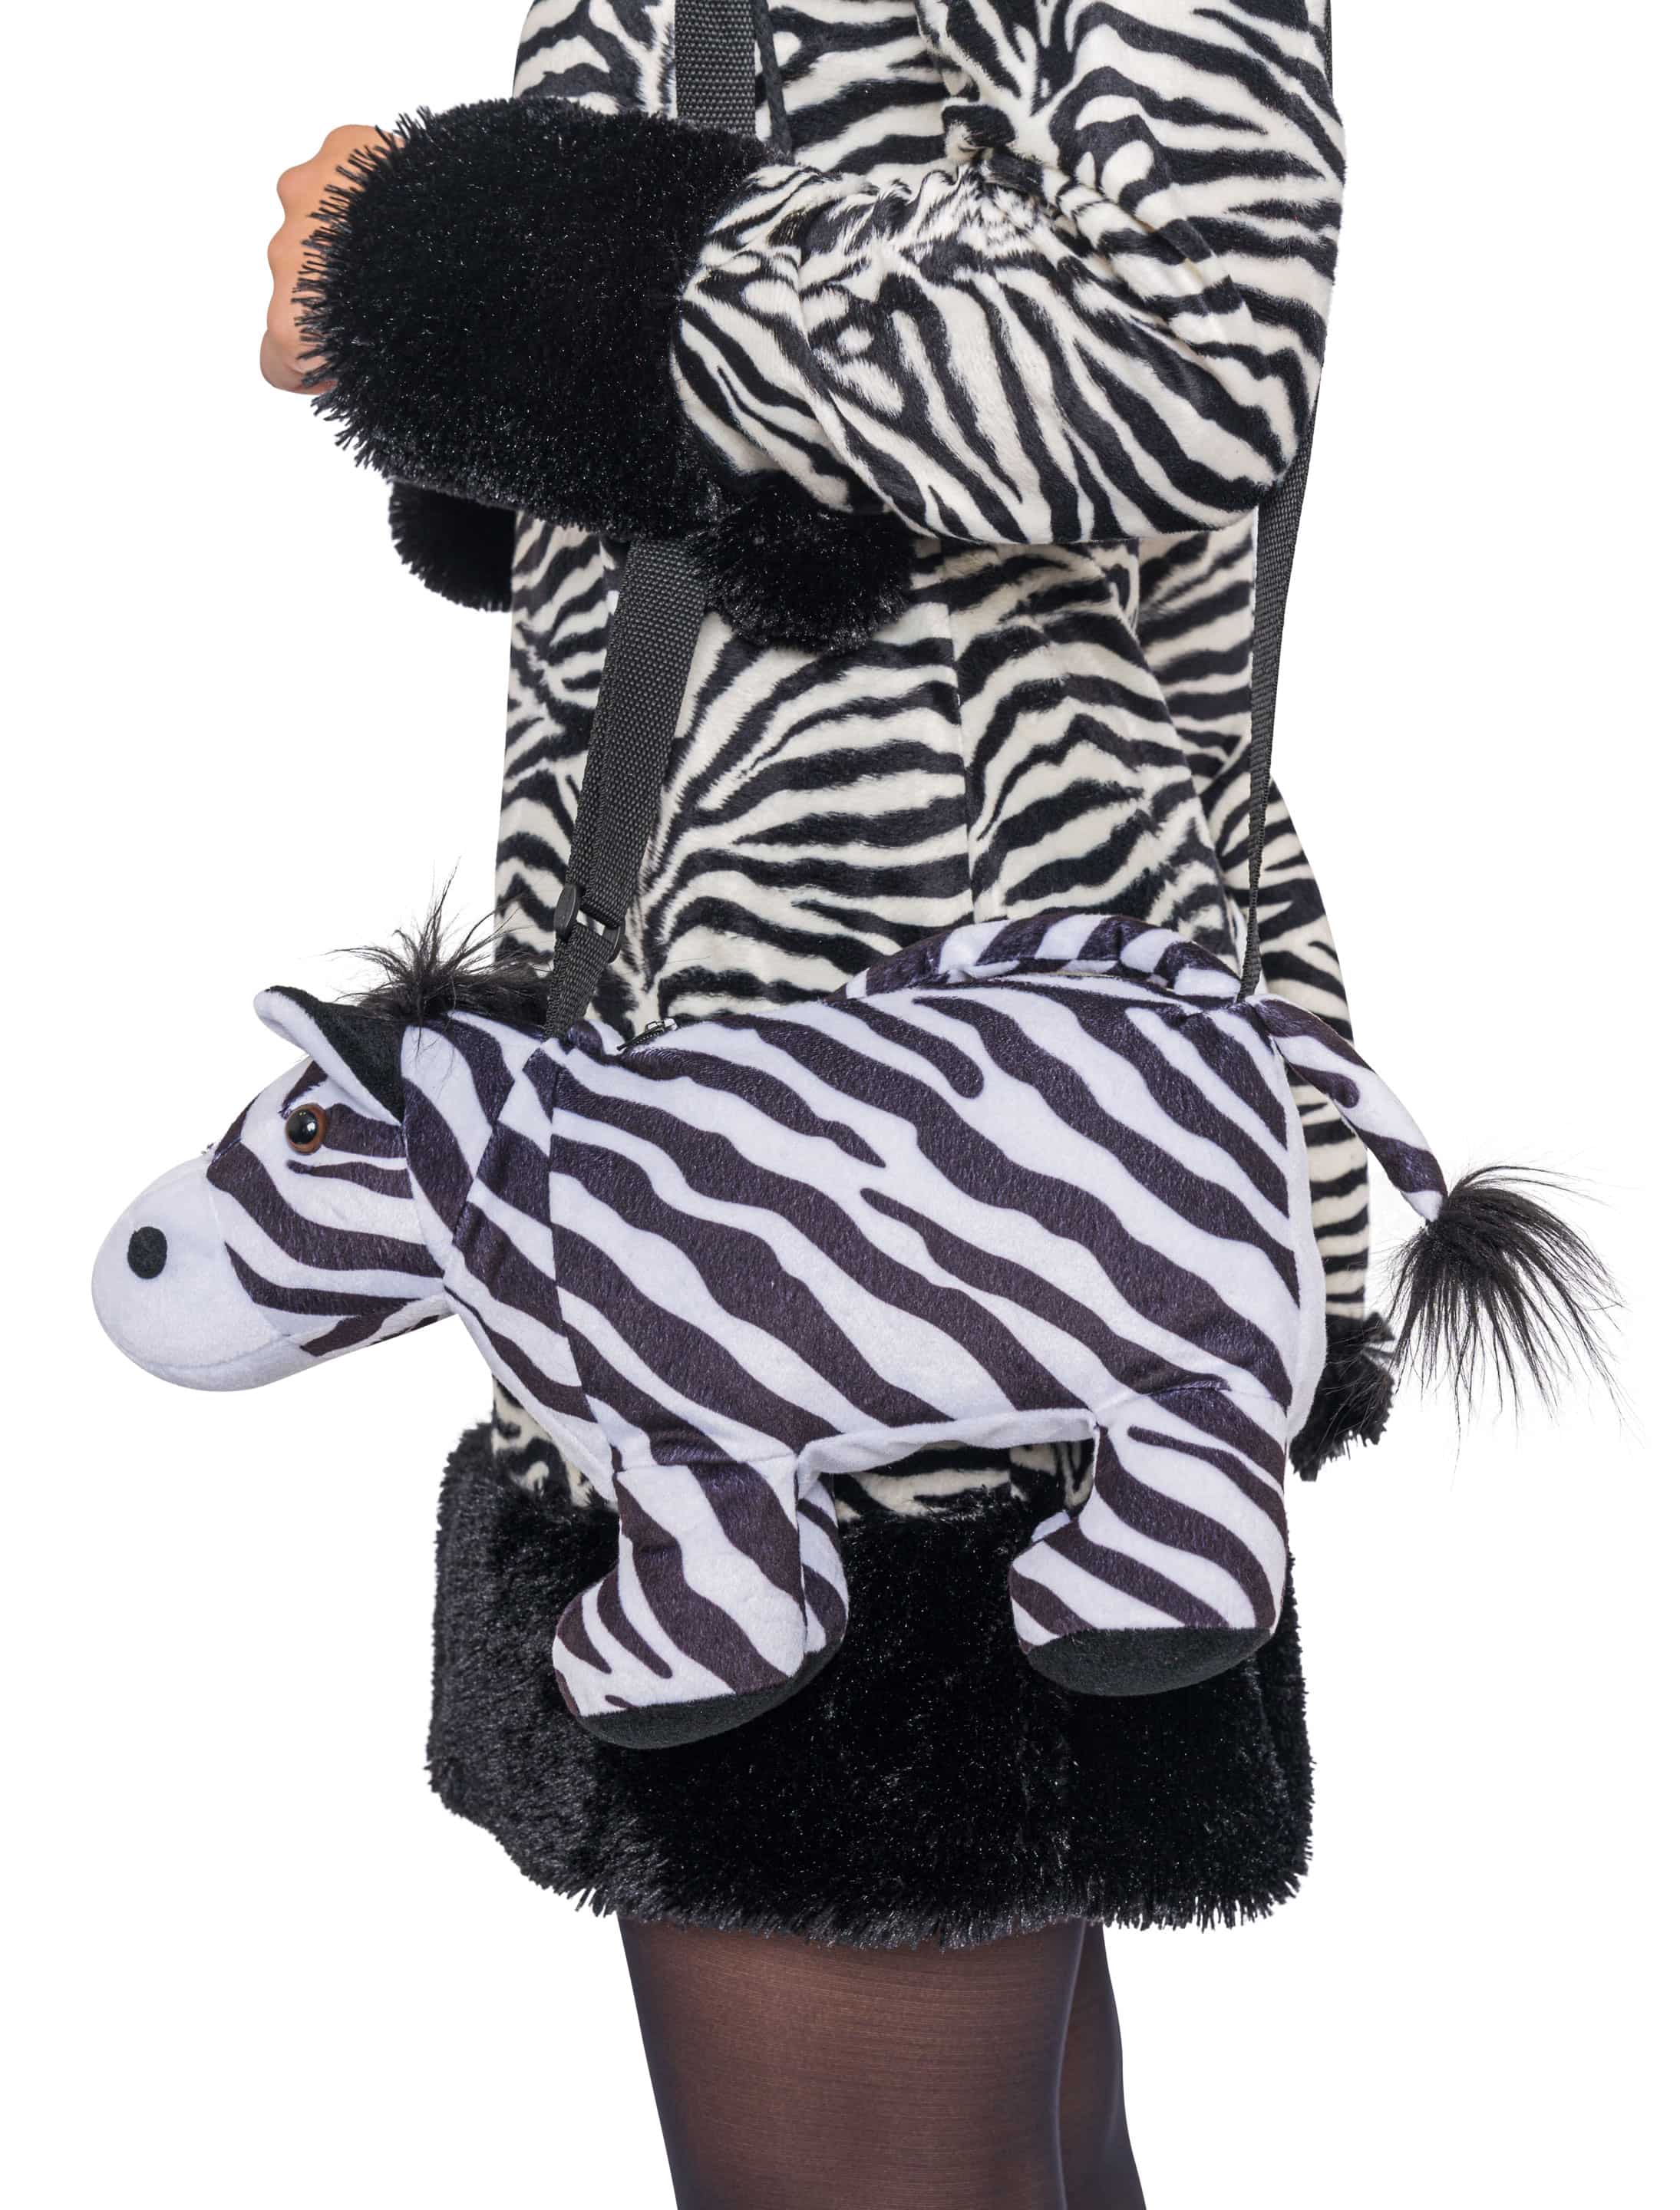 Tasche Plüsch Zebra schwarz/weiß